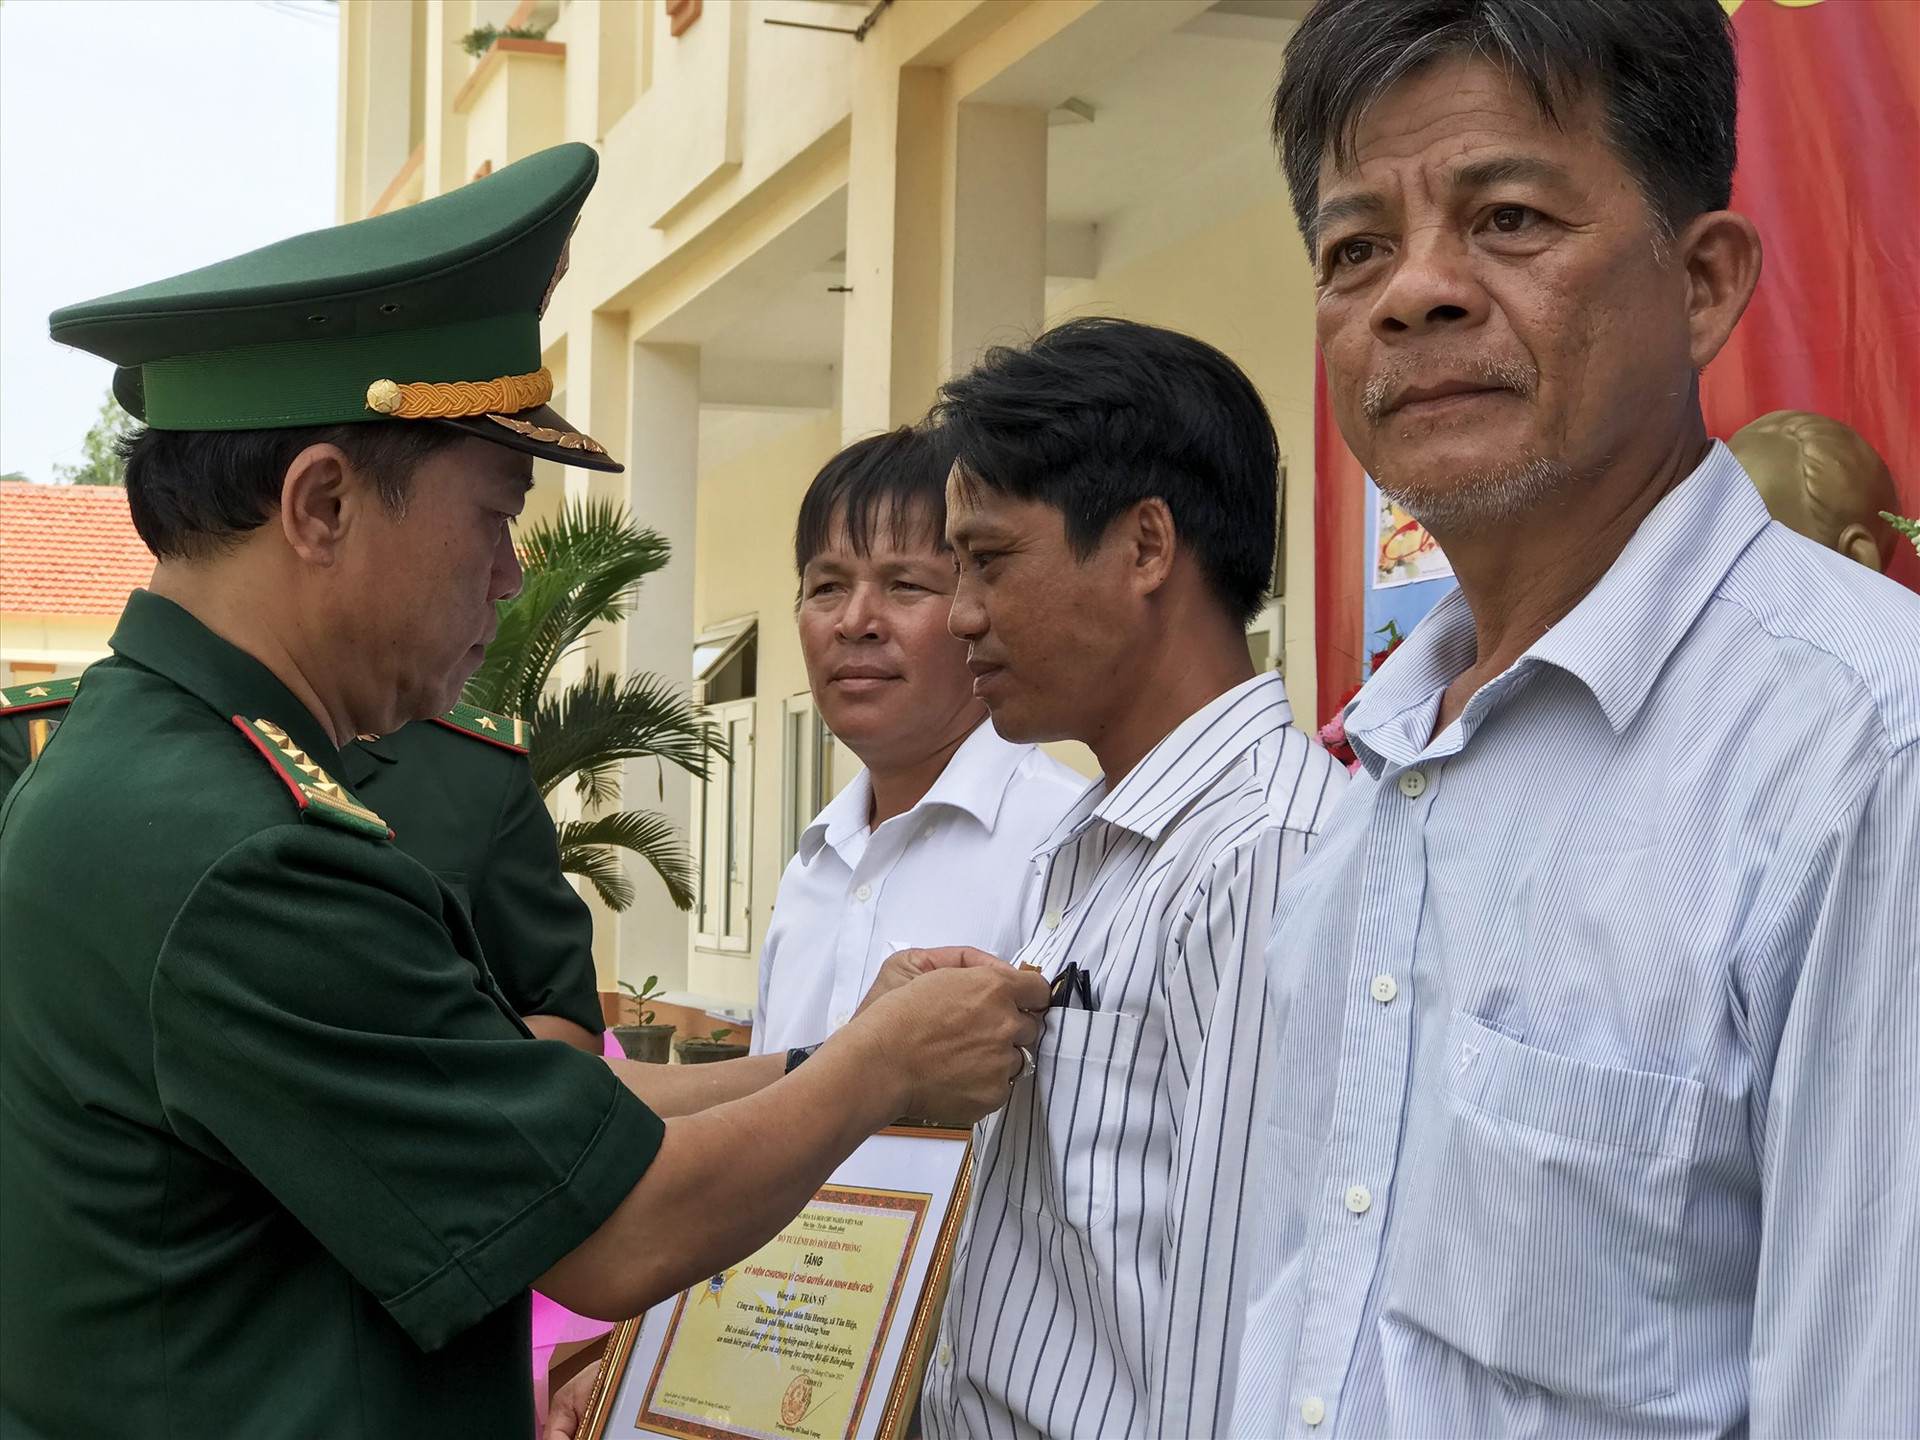 thừa ủy quyền của Bộ quốc phòng, Đại tá Nguyễn Bá Thông chỉ huy trưởng Bộ đội Biên phòng tỉnh trao tặng bằng khen và kỉ niệm chương cho cán bộ và người dân xã đảo.